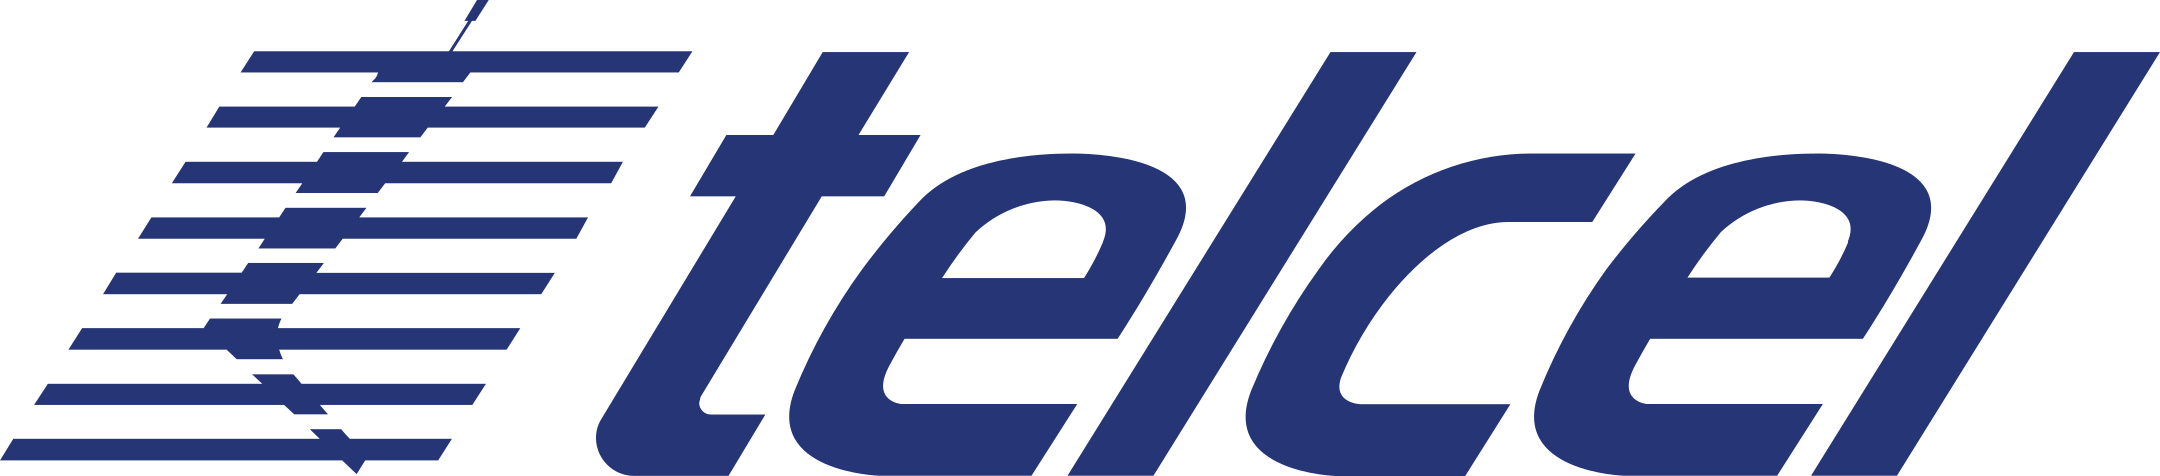 telcel logo 1 - Telcel Logo